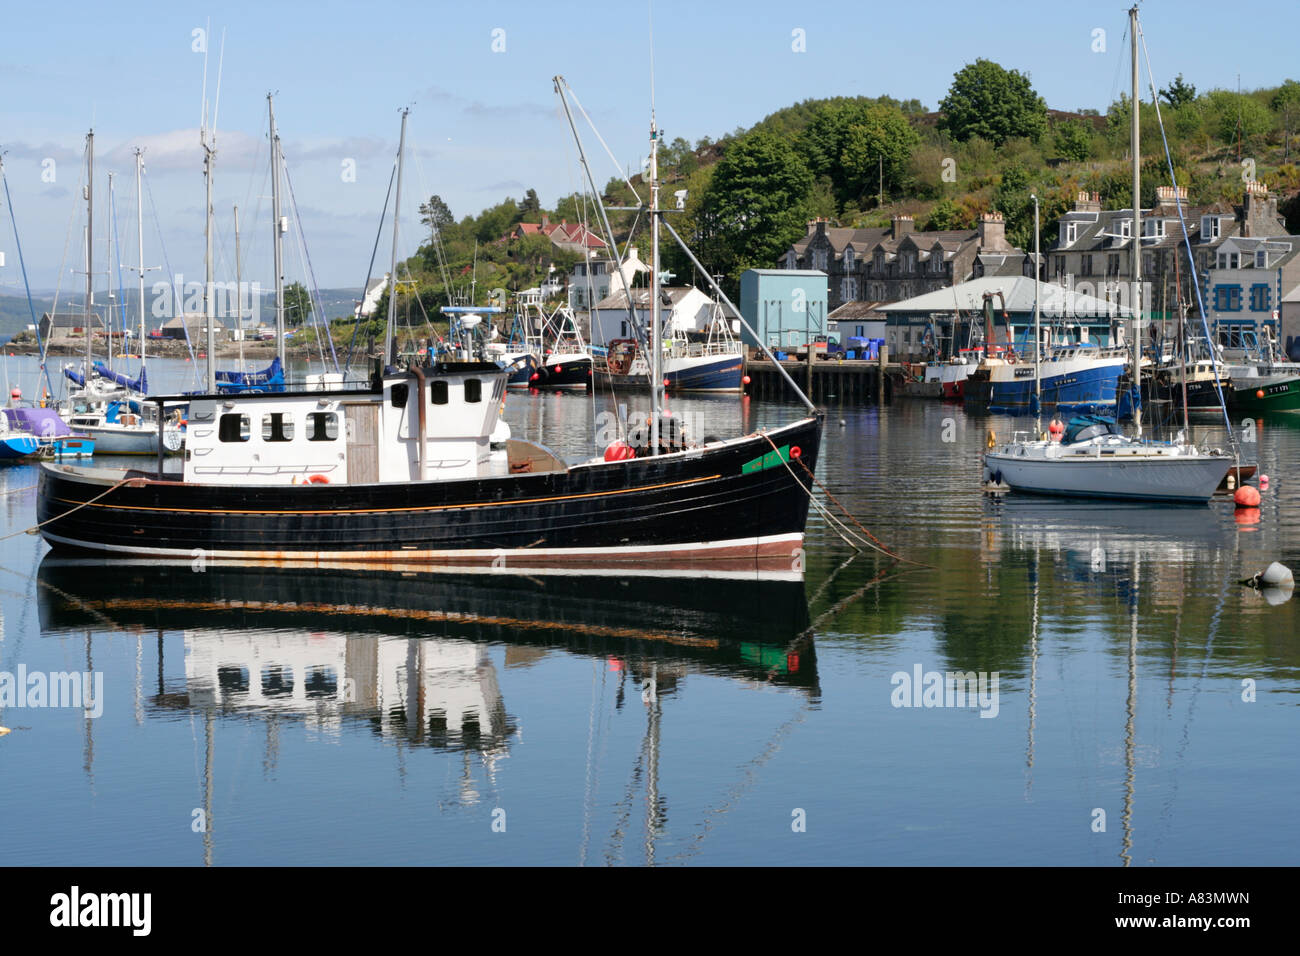 Tarbet argyll scozia imbarcazioni del porto di riflessioni calma scena Foto Stock